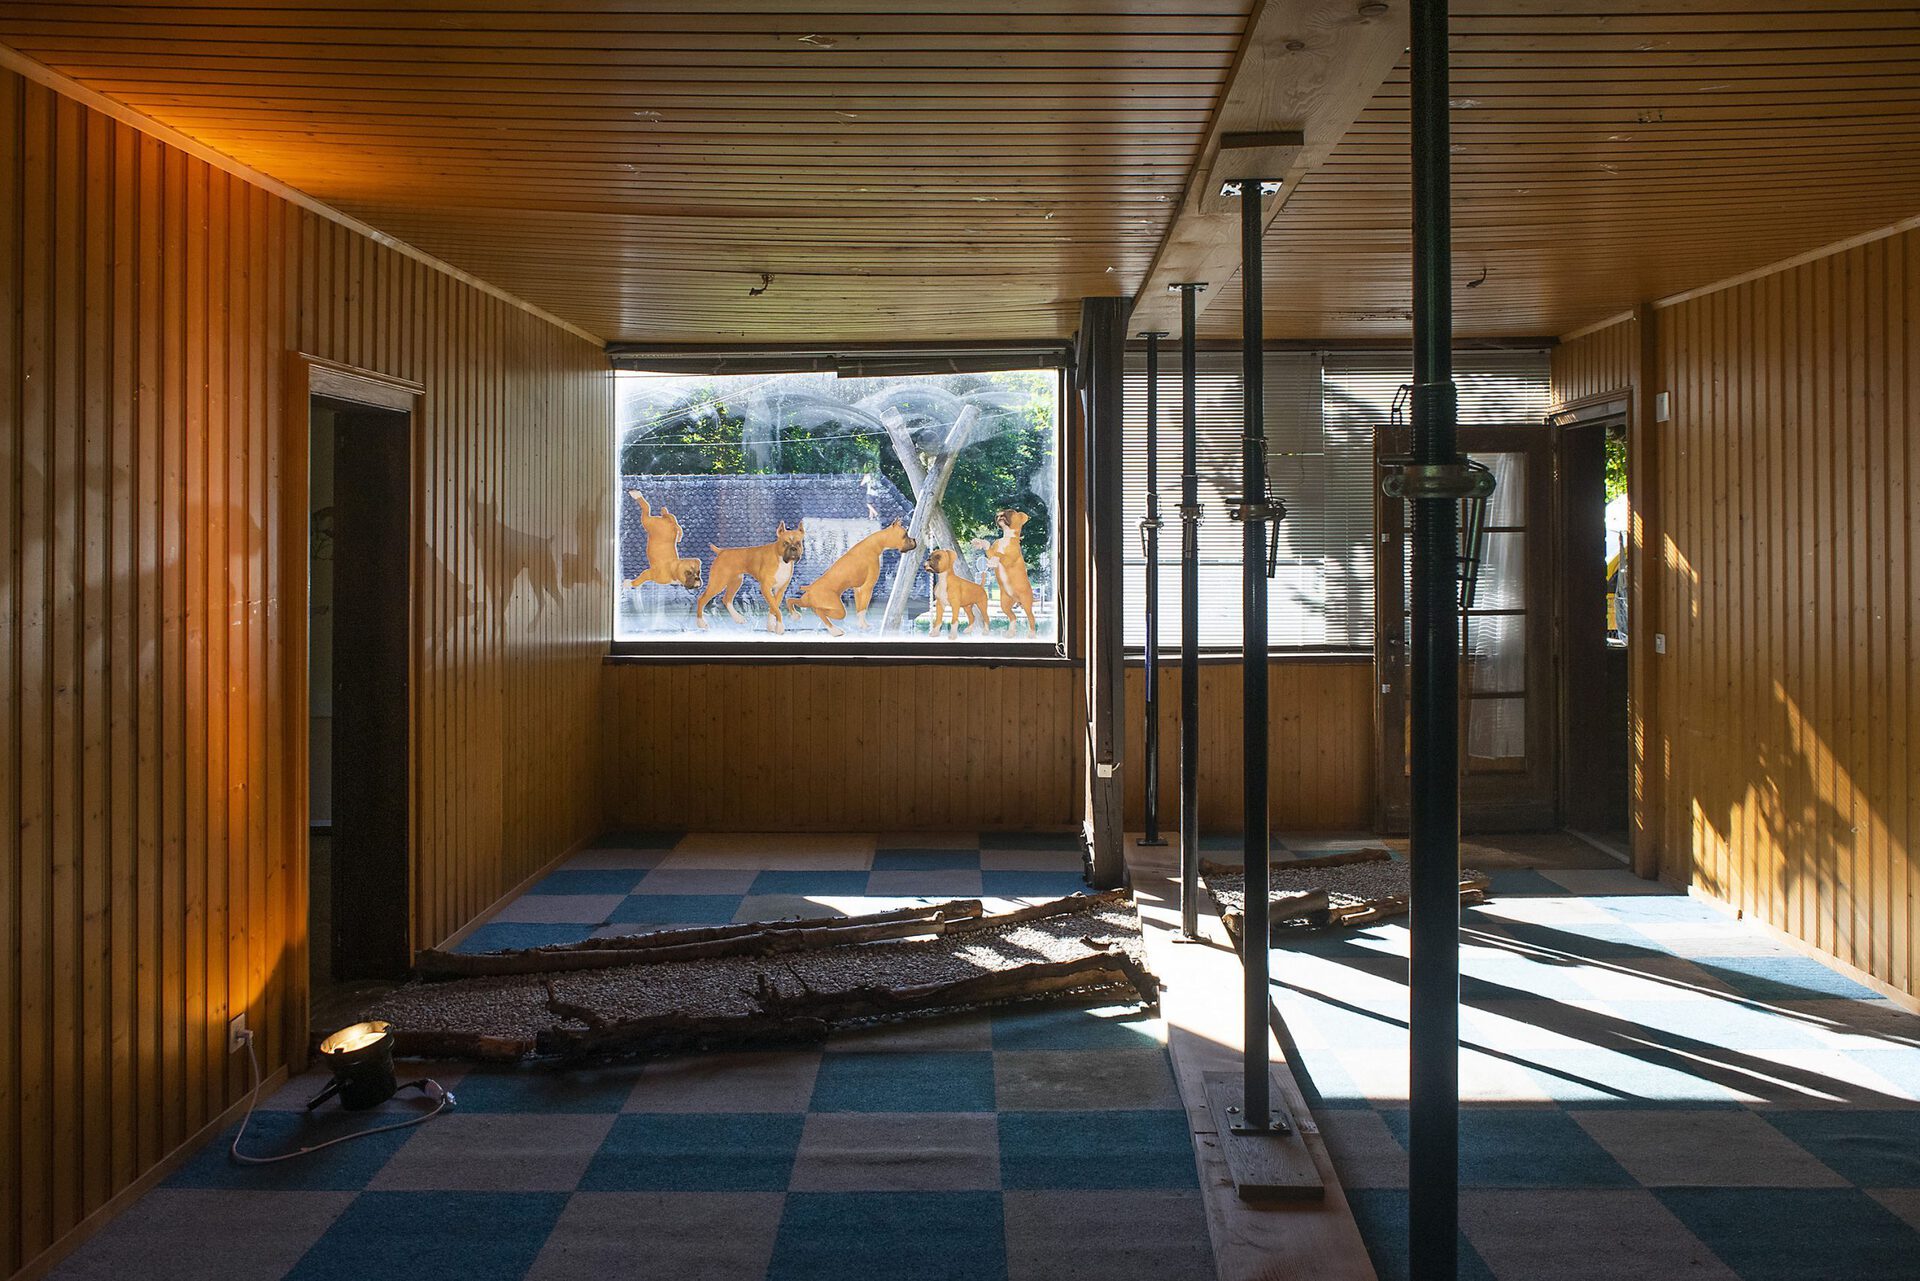 Installation view, Dog Walk, Chalet à Gobet, Lausanne, 2020